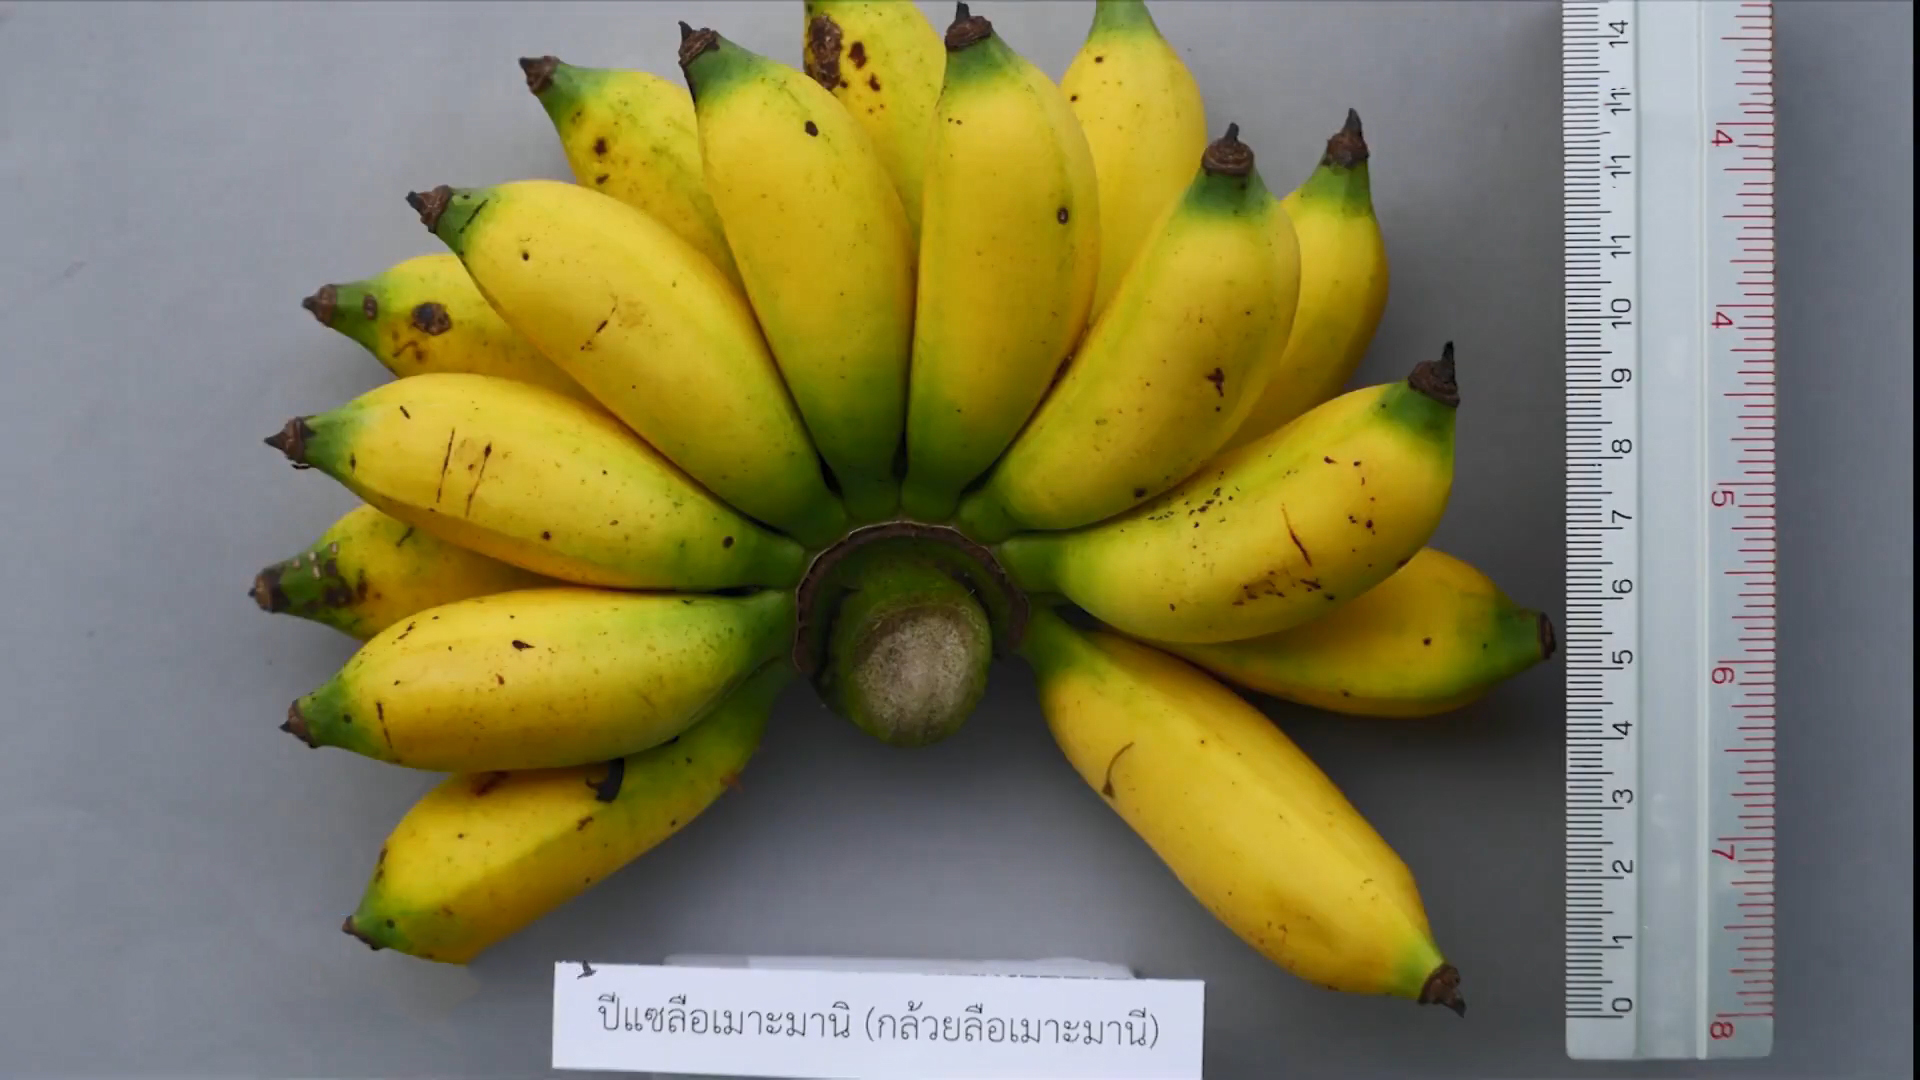 กรมวิชาการเกษตรตามหาพันธุ์กล้วยโบราณหายาก สร้างพิพิธภัณฑ์ธรรมชาติตามพระราชดำริ